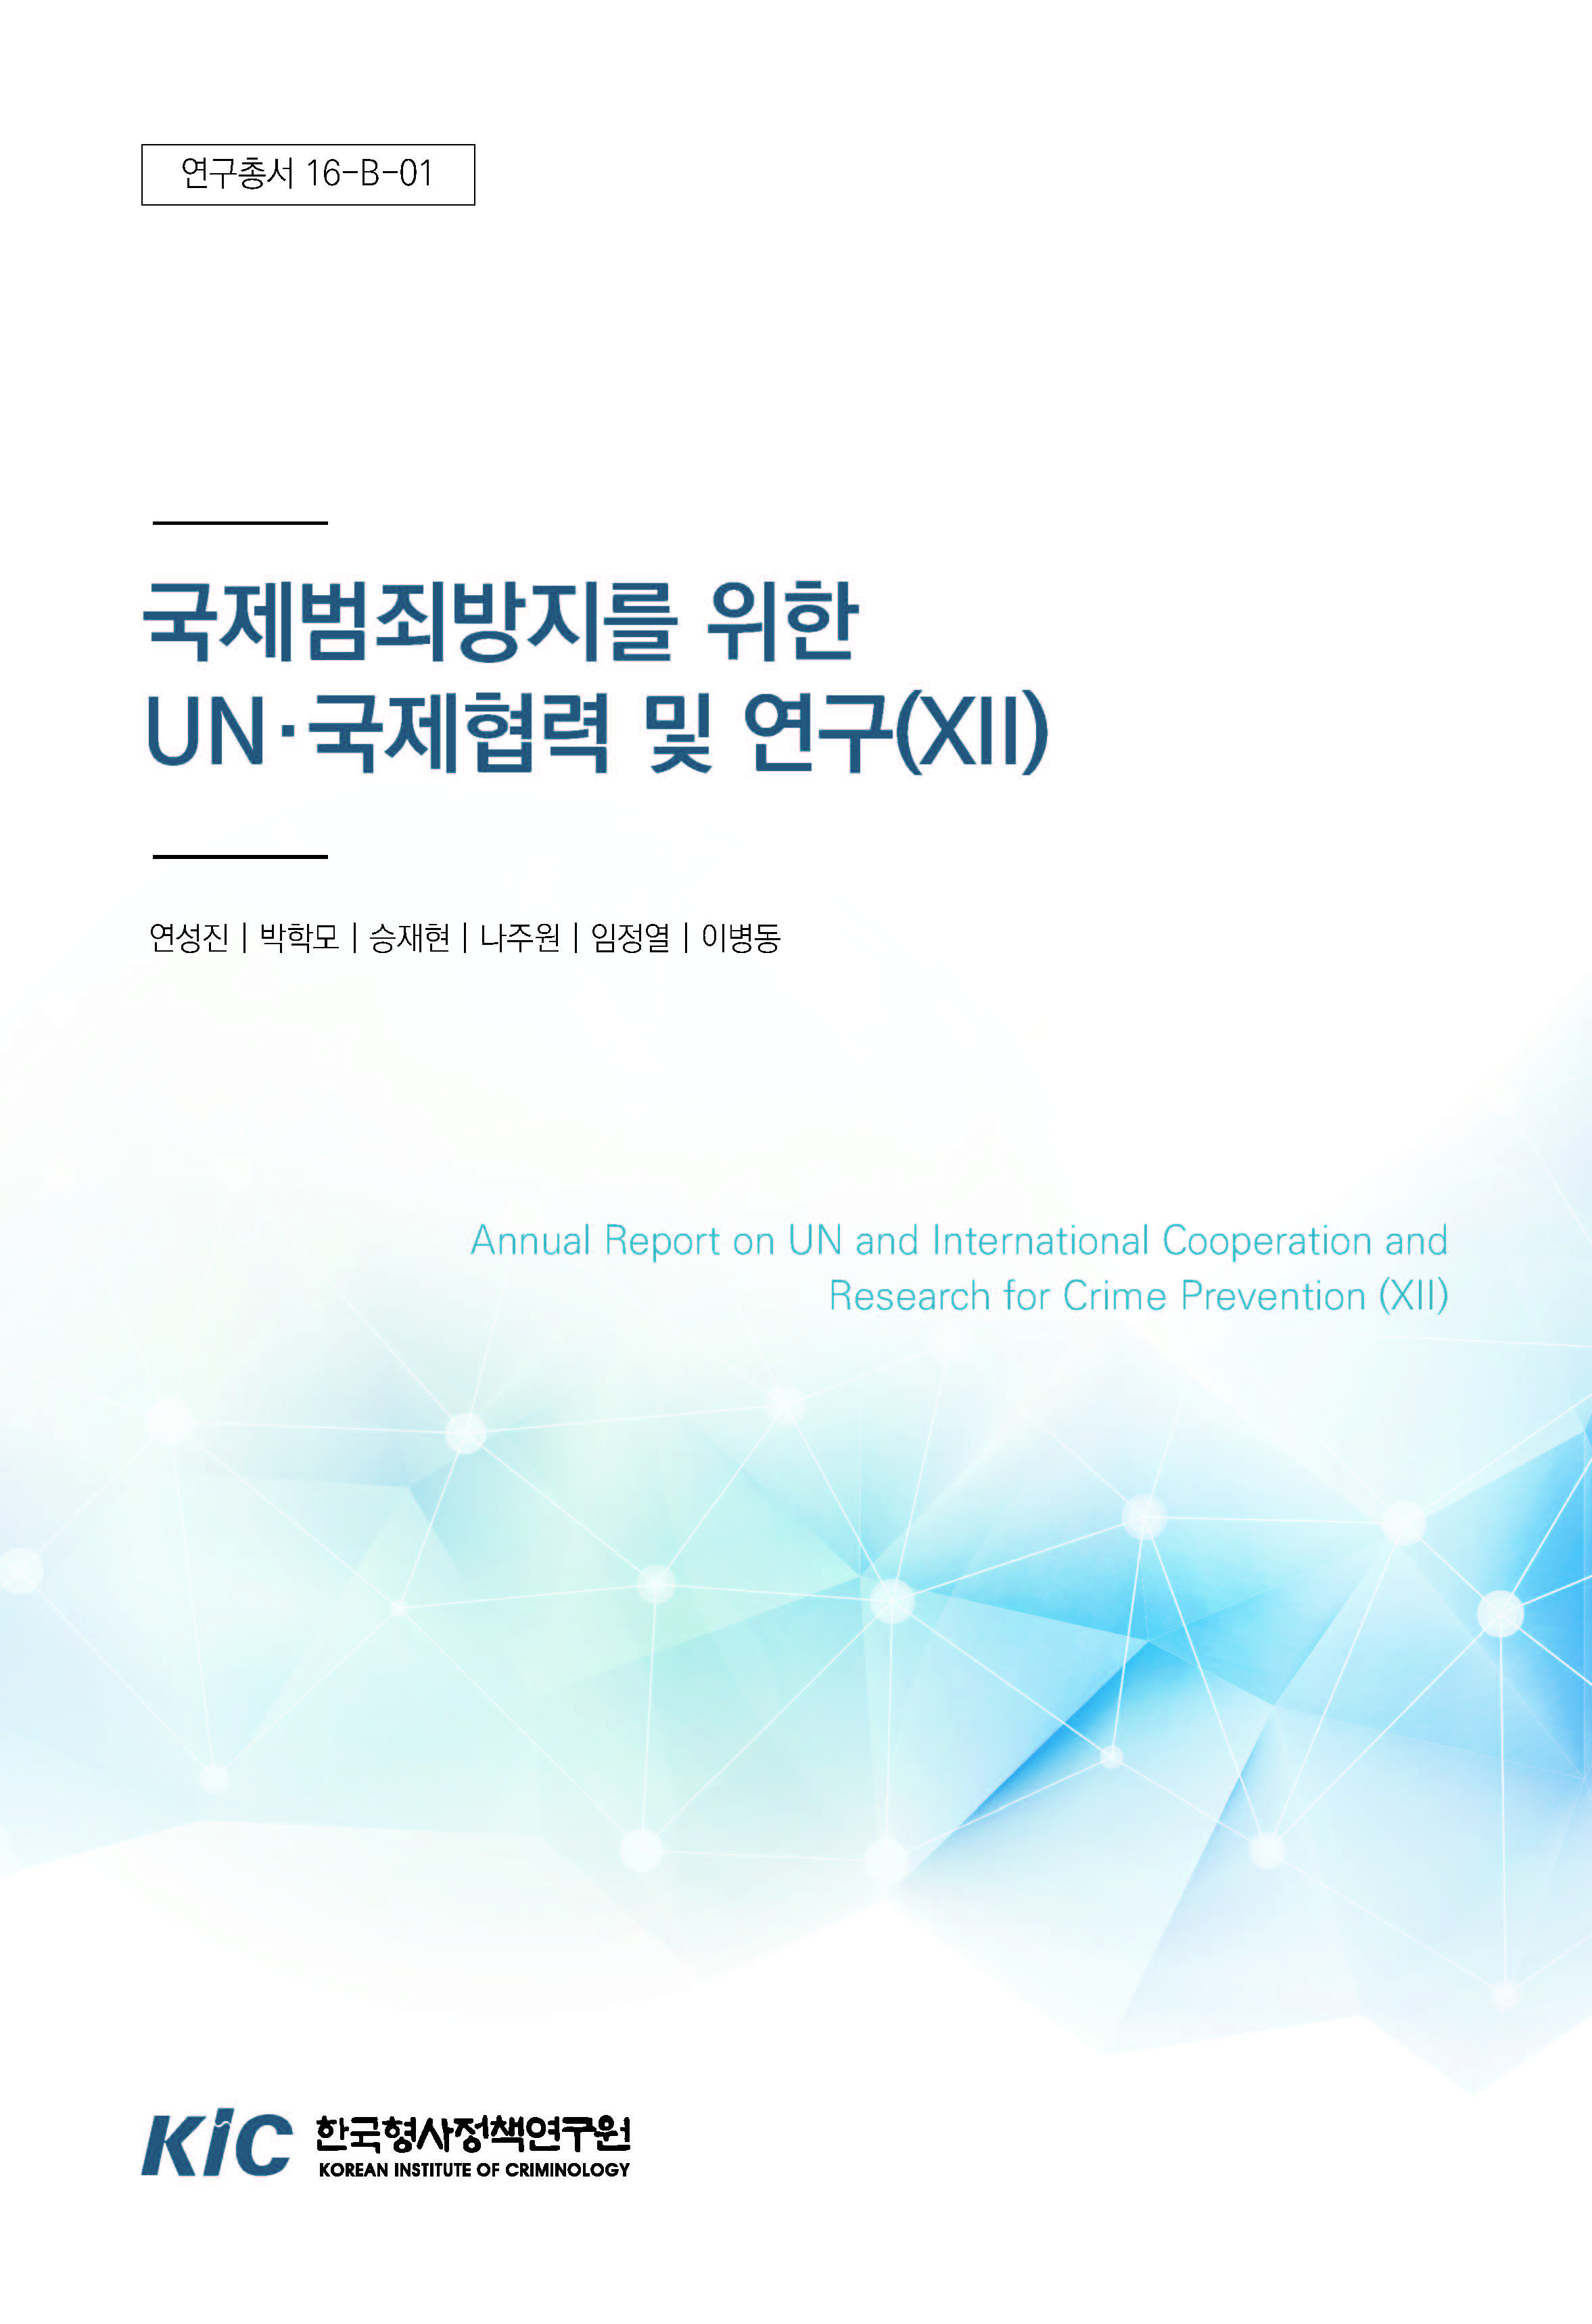 국제범죄방지를 위한 UN∙국제협력 및 연구(Ⅻ)